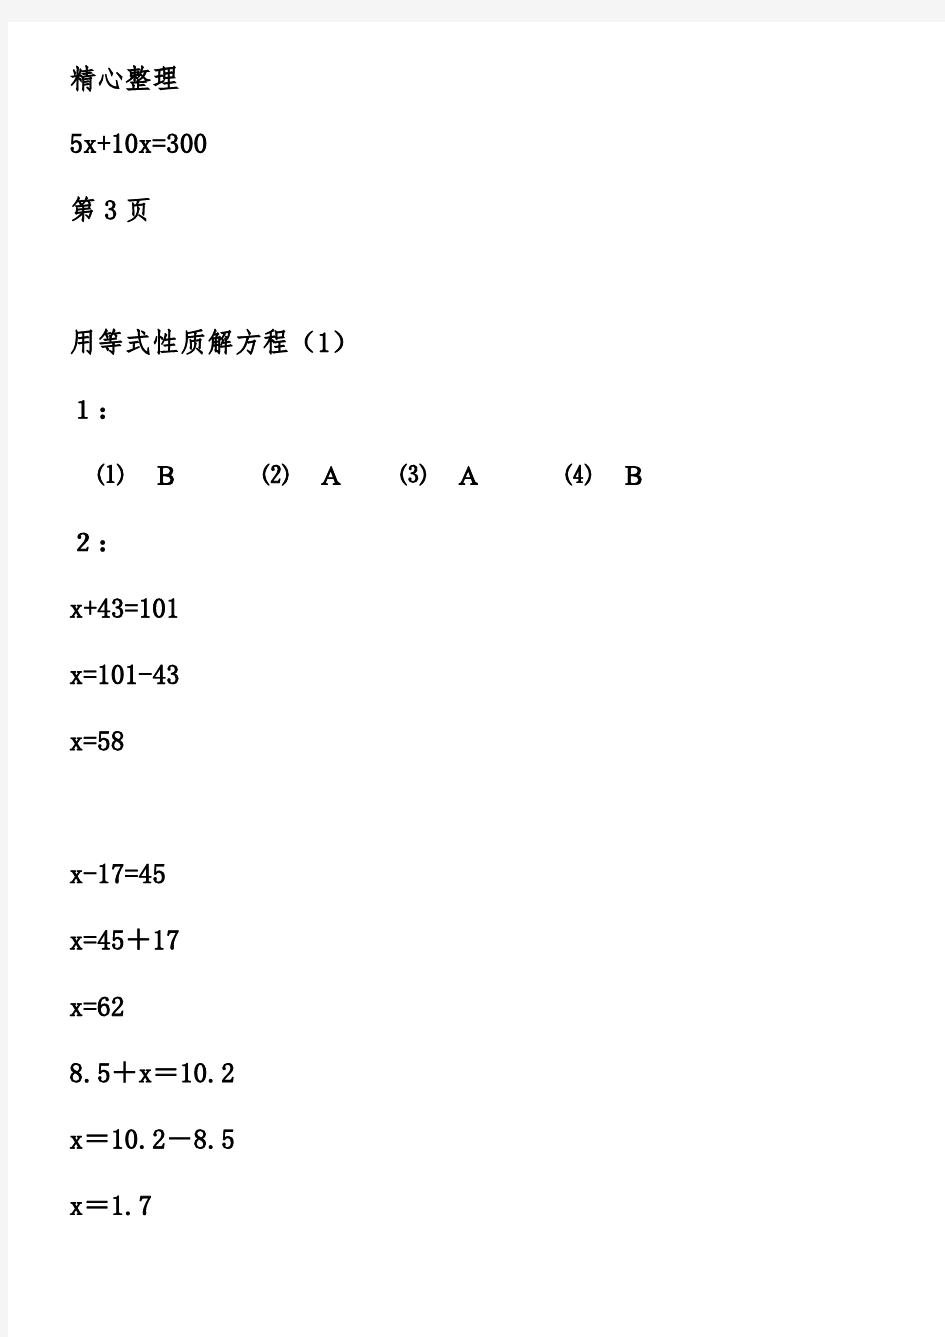 五年级下册数学练习册答案【1-4页】